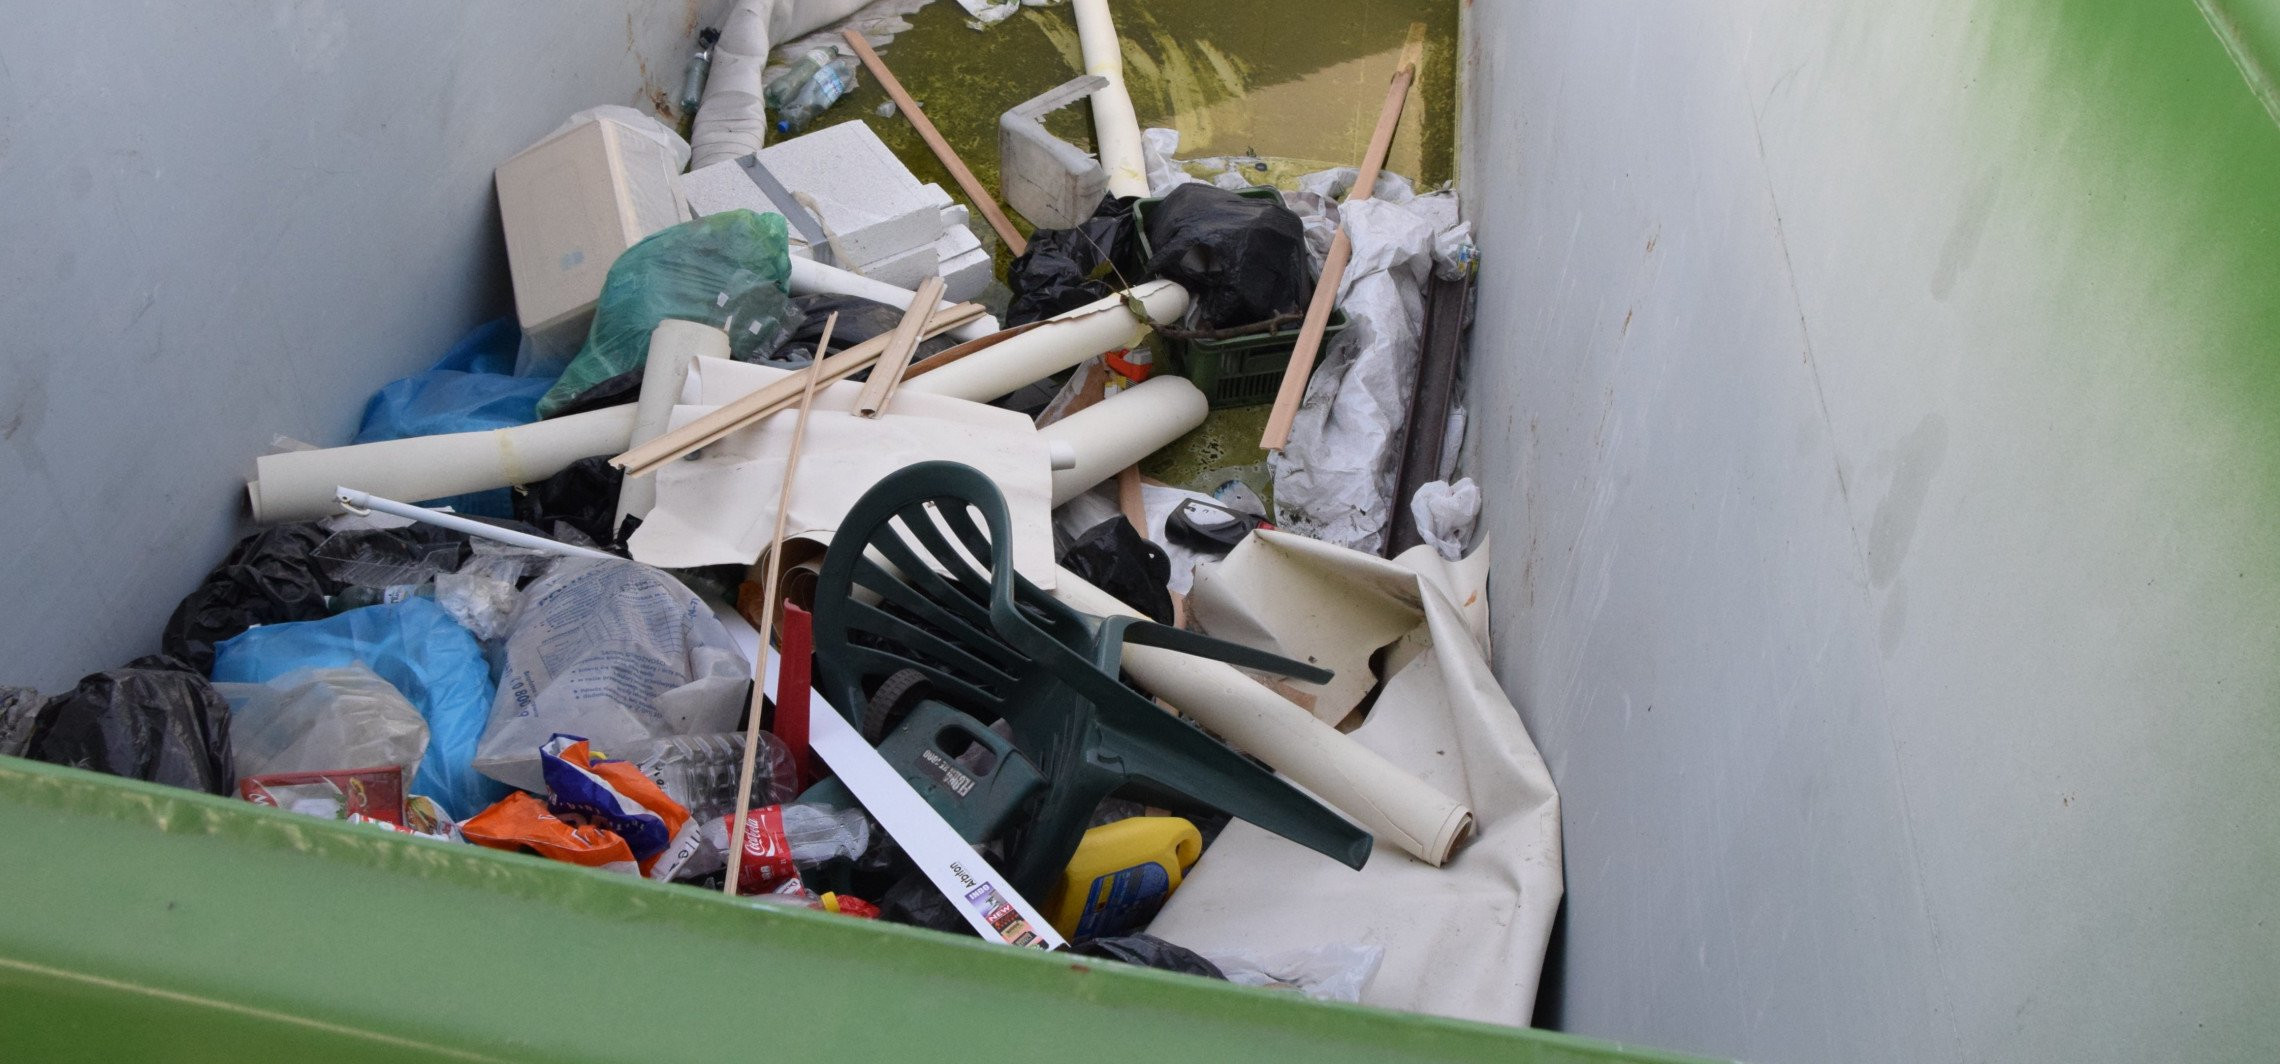 Inowrocław - Zielona środa: wywiozą odpady wielkogabarytowe